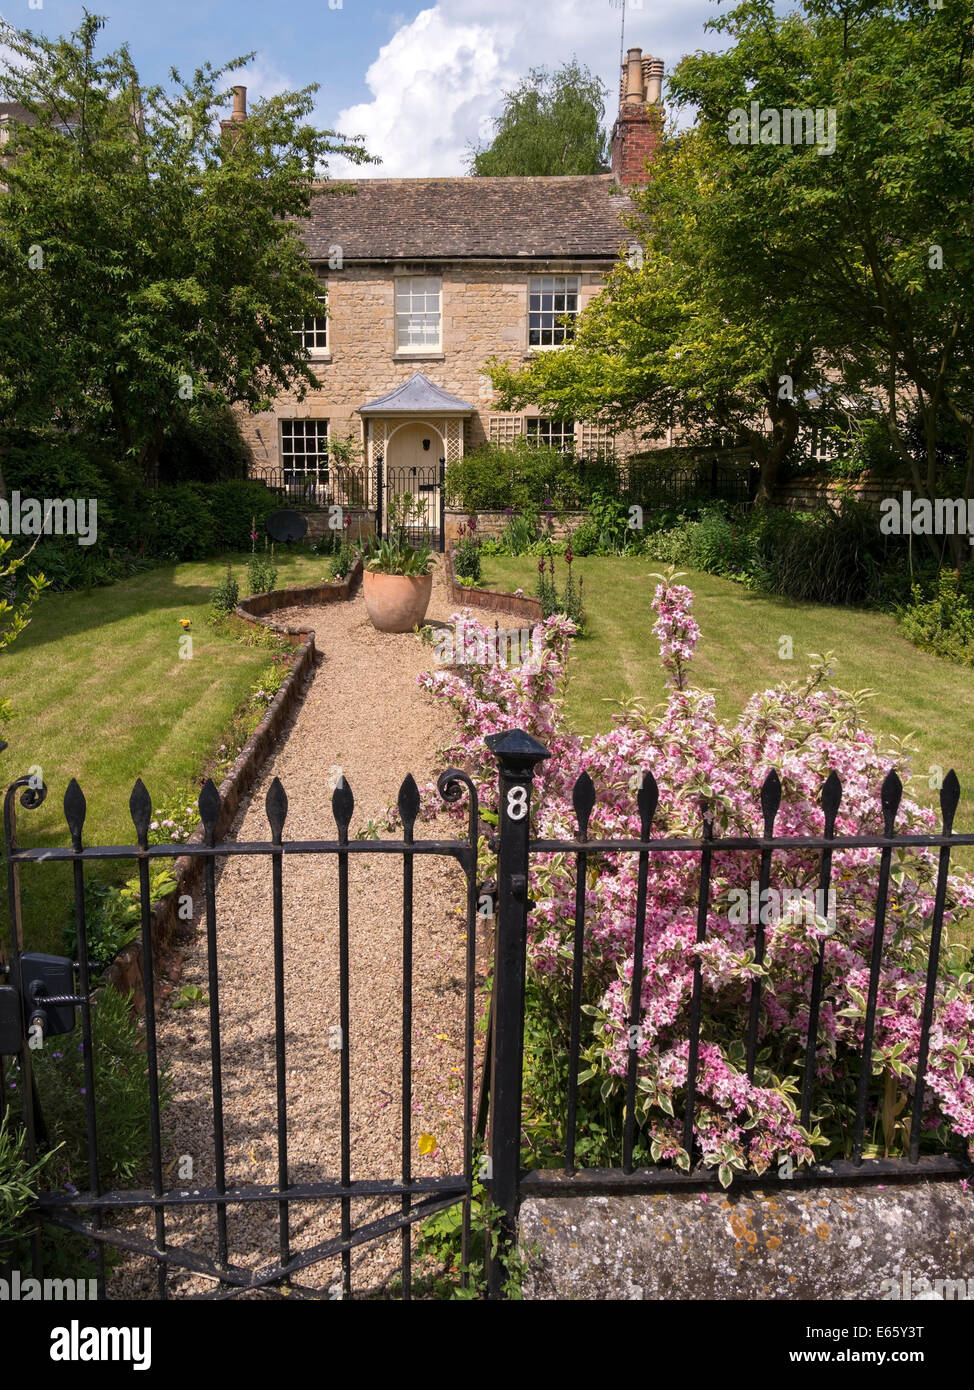 Vecchio attraente casa di paese in pietra cottage con bella veranda, giardino & ringhiere metalliche, bagno fila,Stamford, Lincolnshire,l'Inghilterra,UK Foto Stock